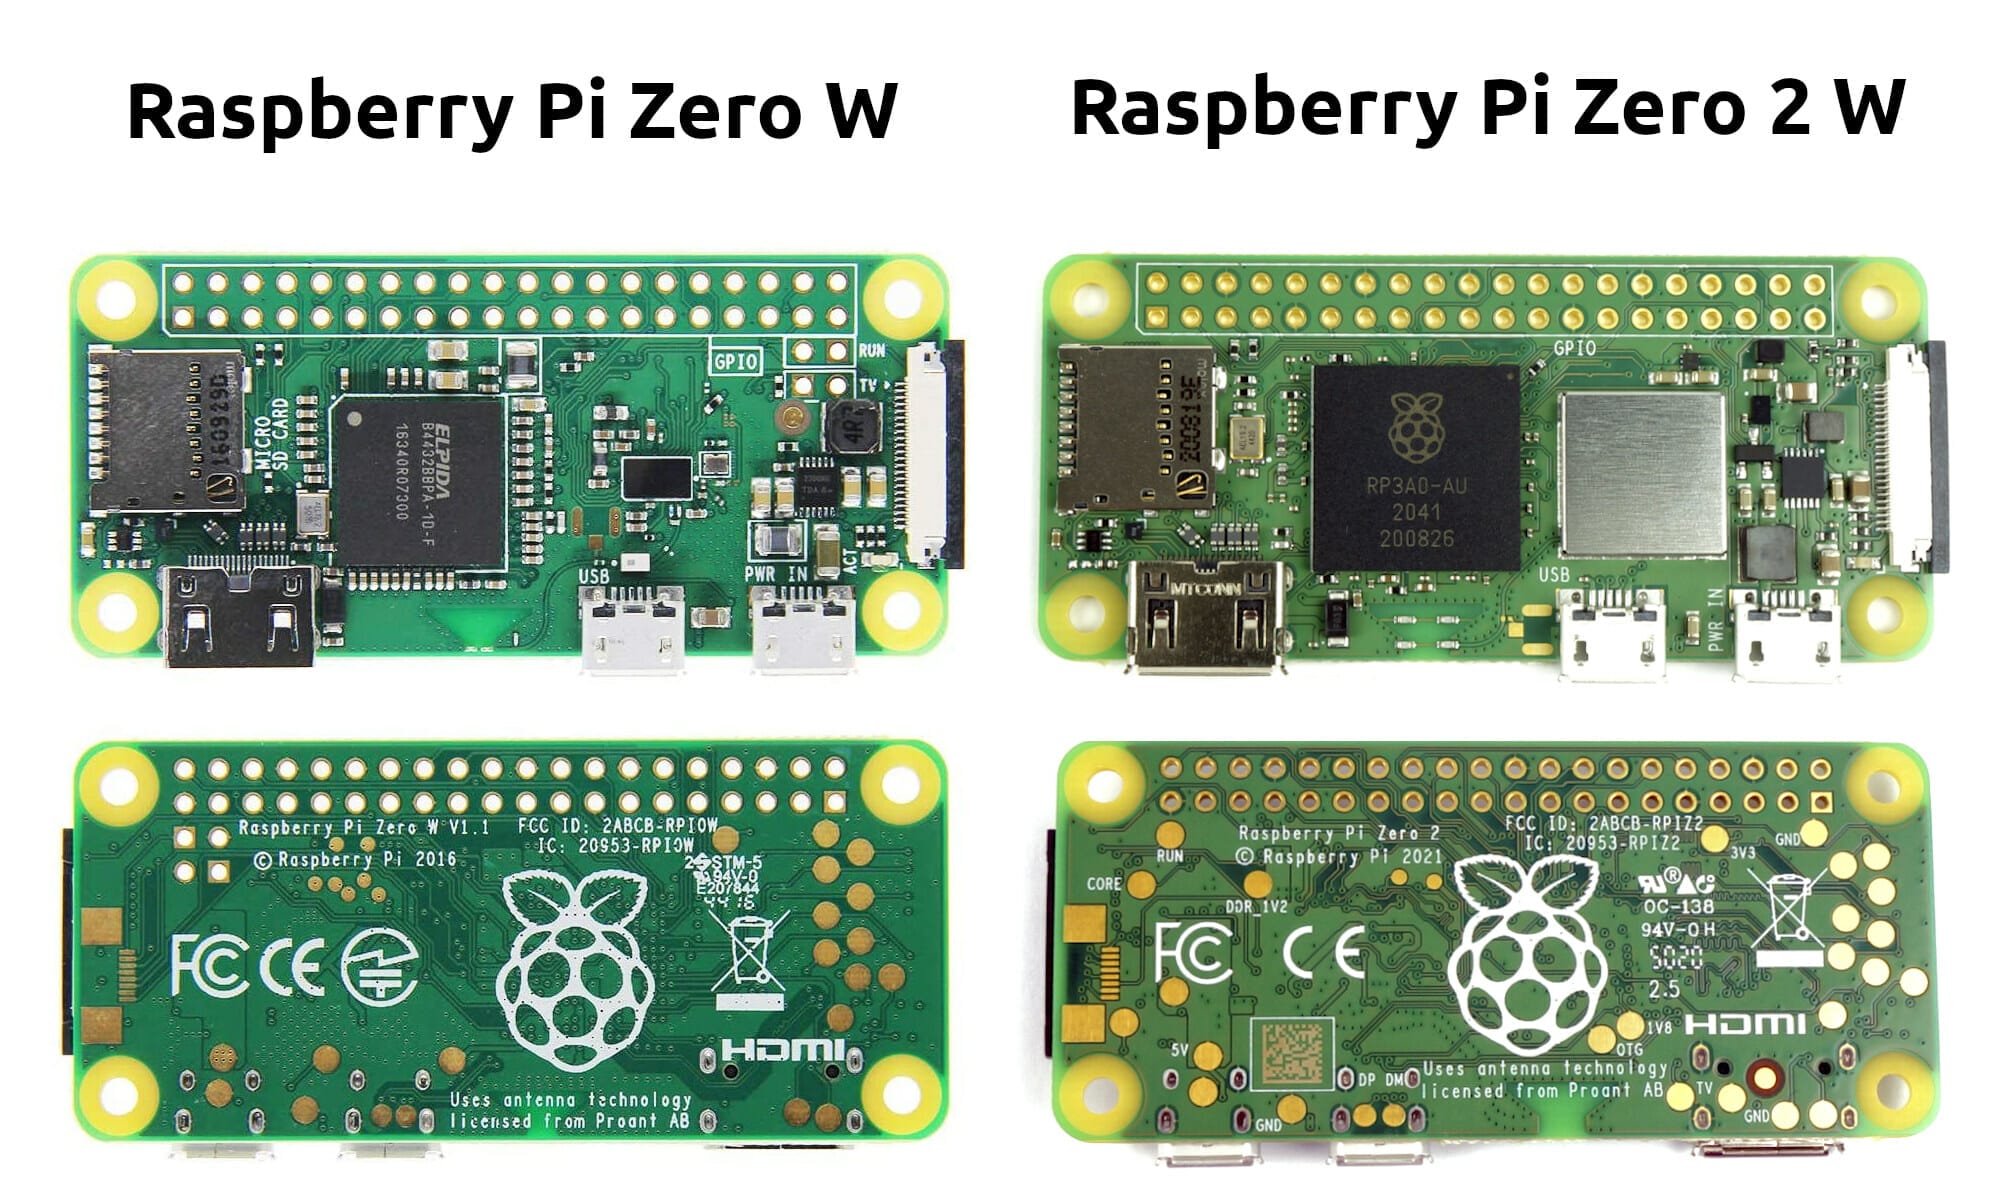 raspberry-pi-zero-2-w-and-zero-w-features-comparison-cnx-software